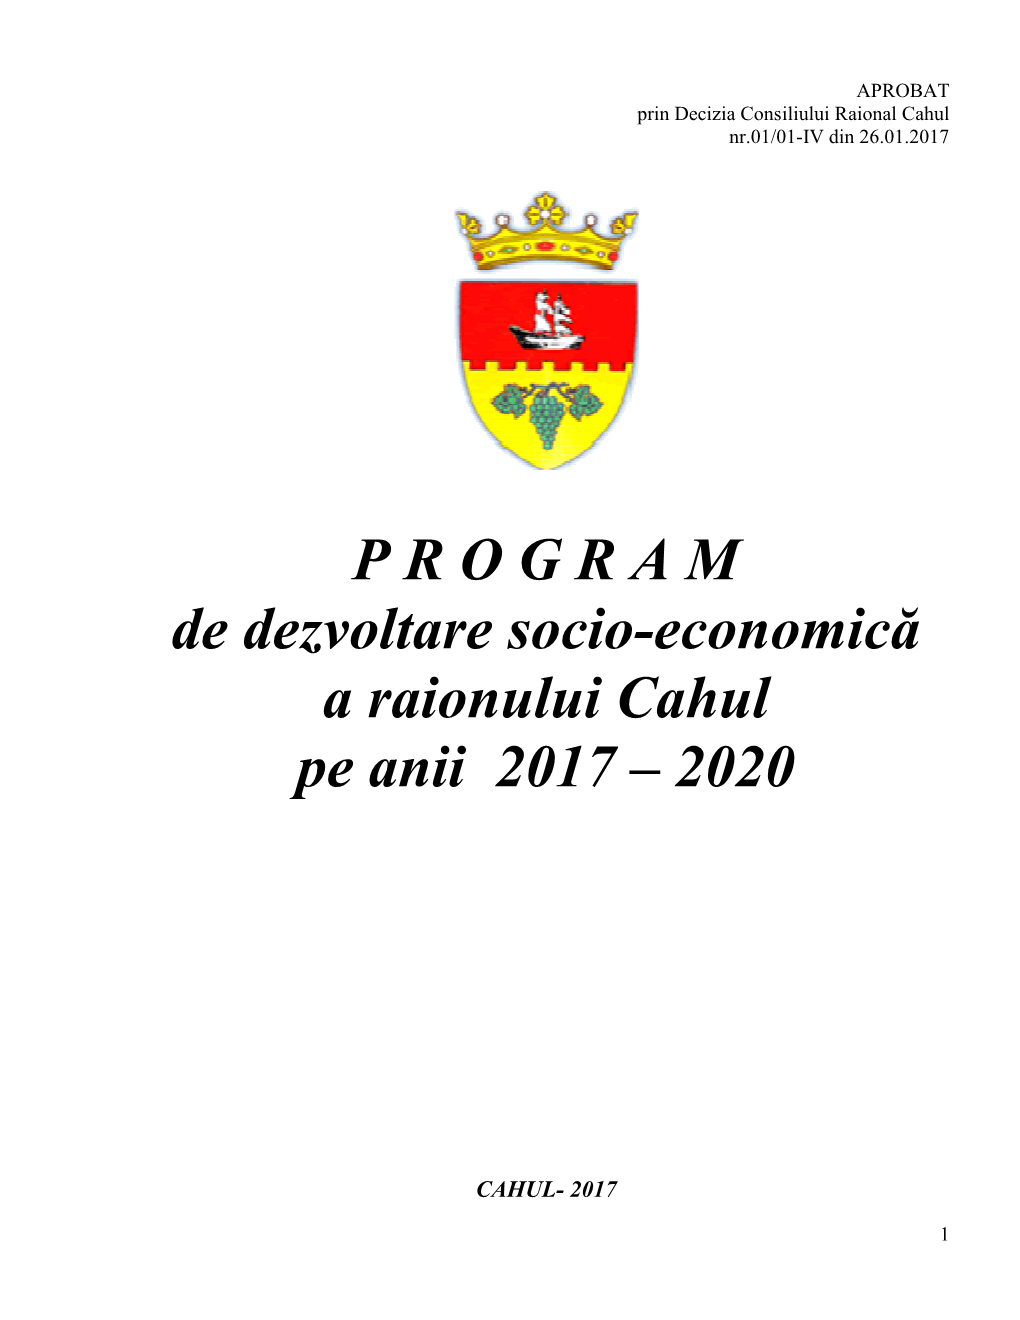 Pe Anii 2017 – 2020